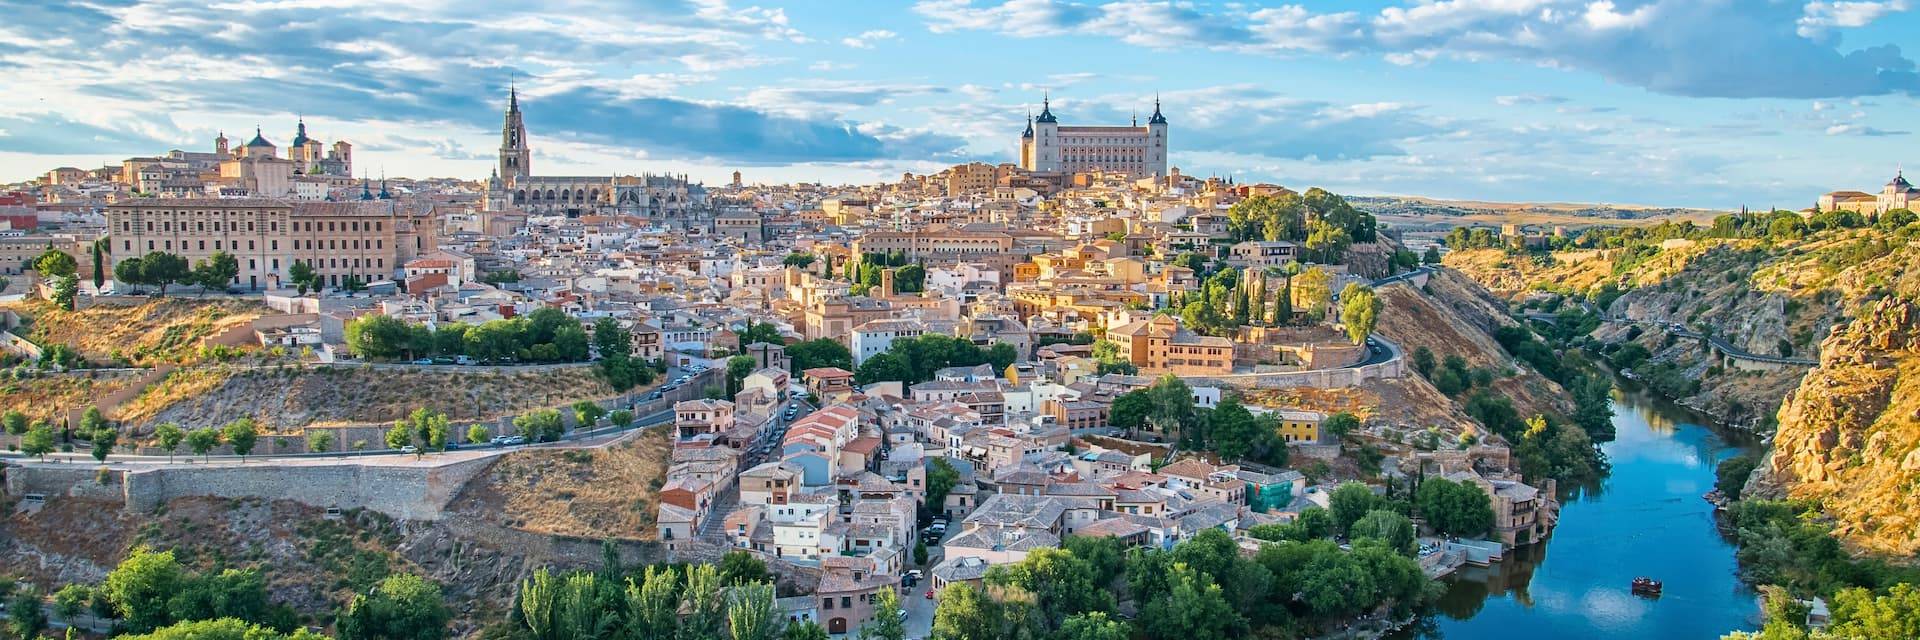 Visita de medio día a Toledo desde Madrid por la mañana